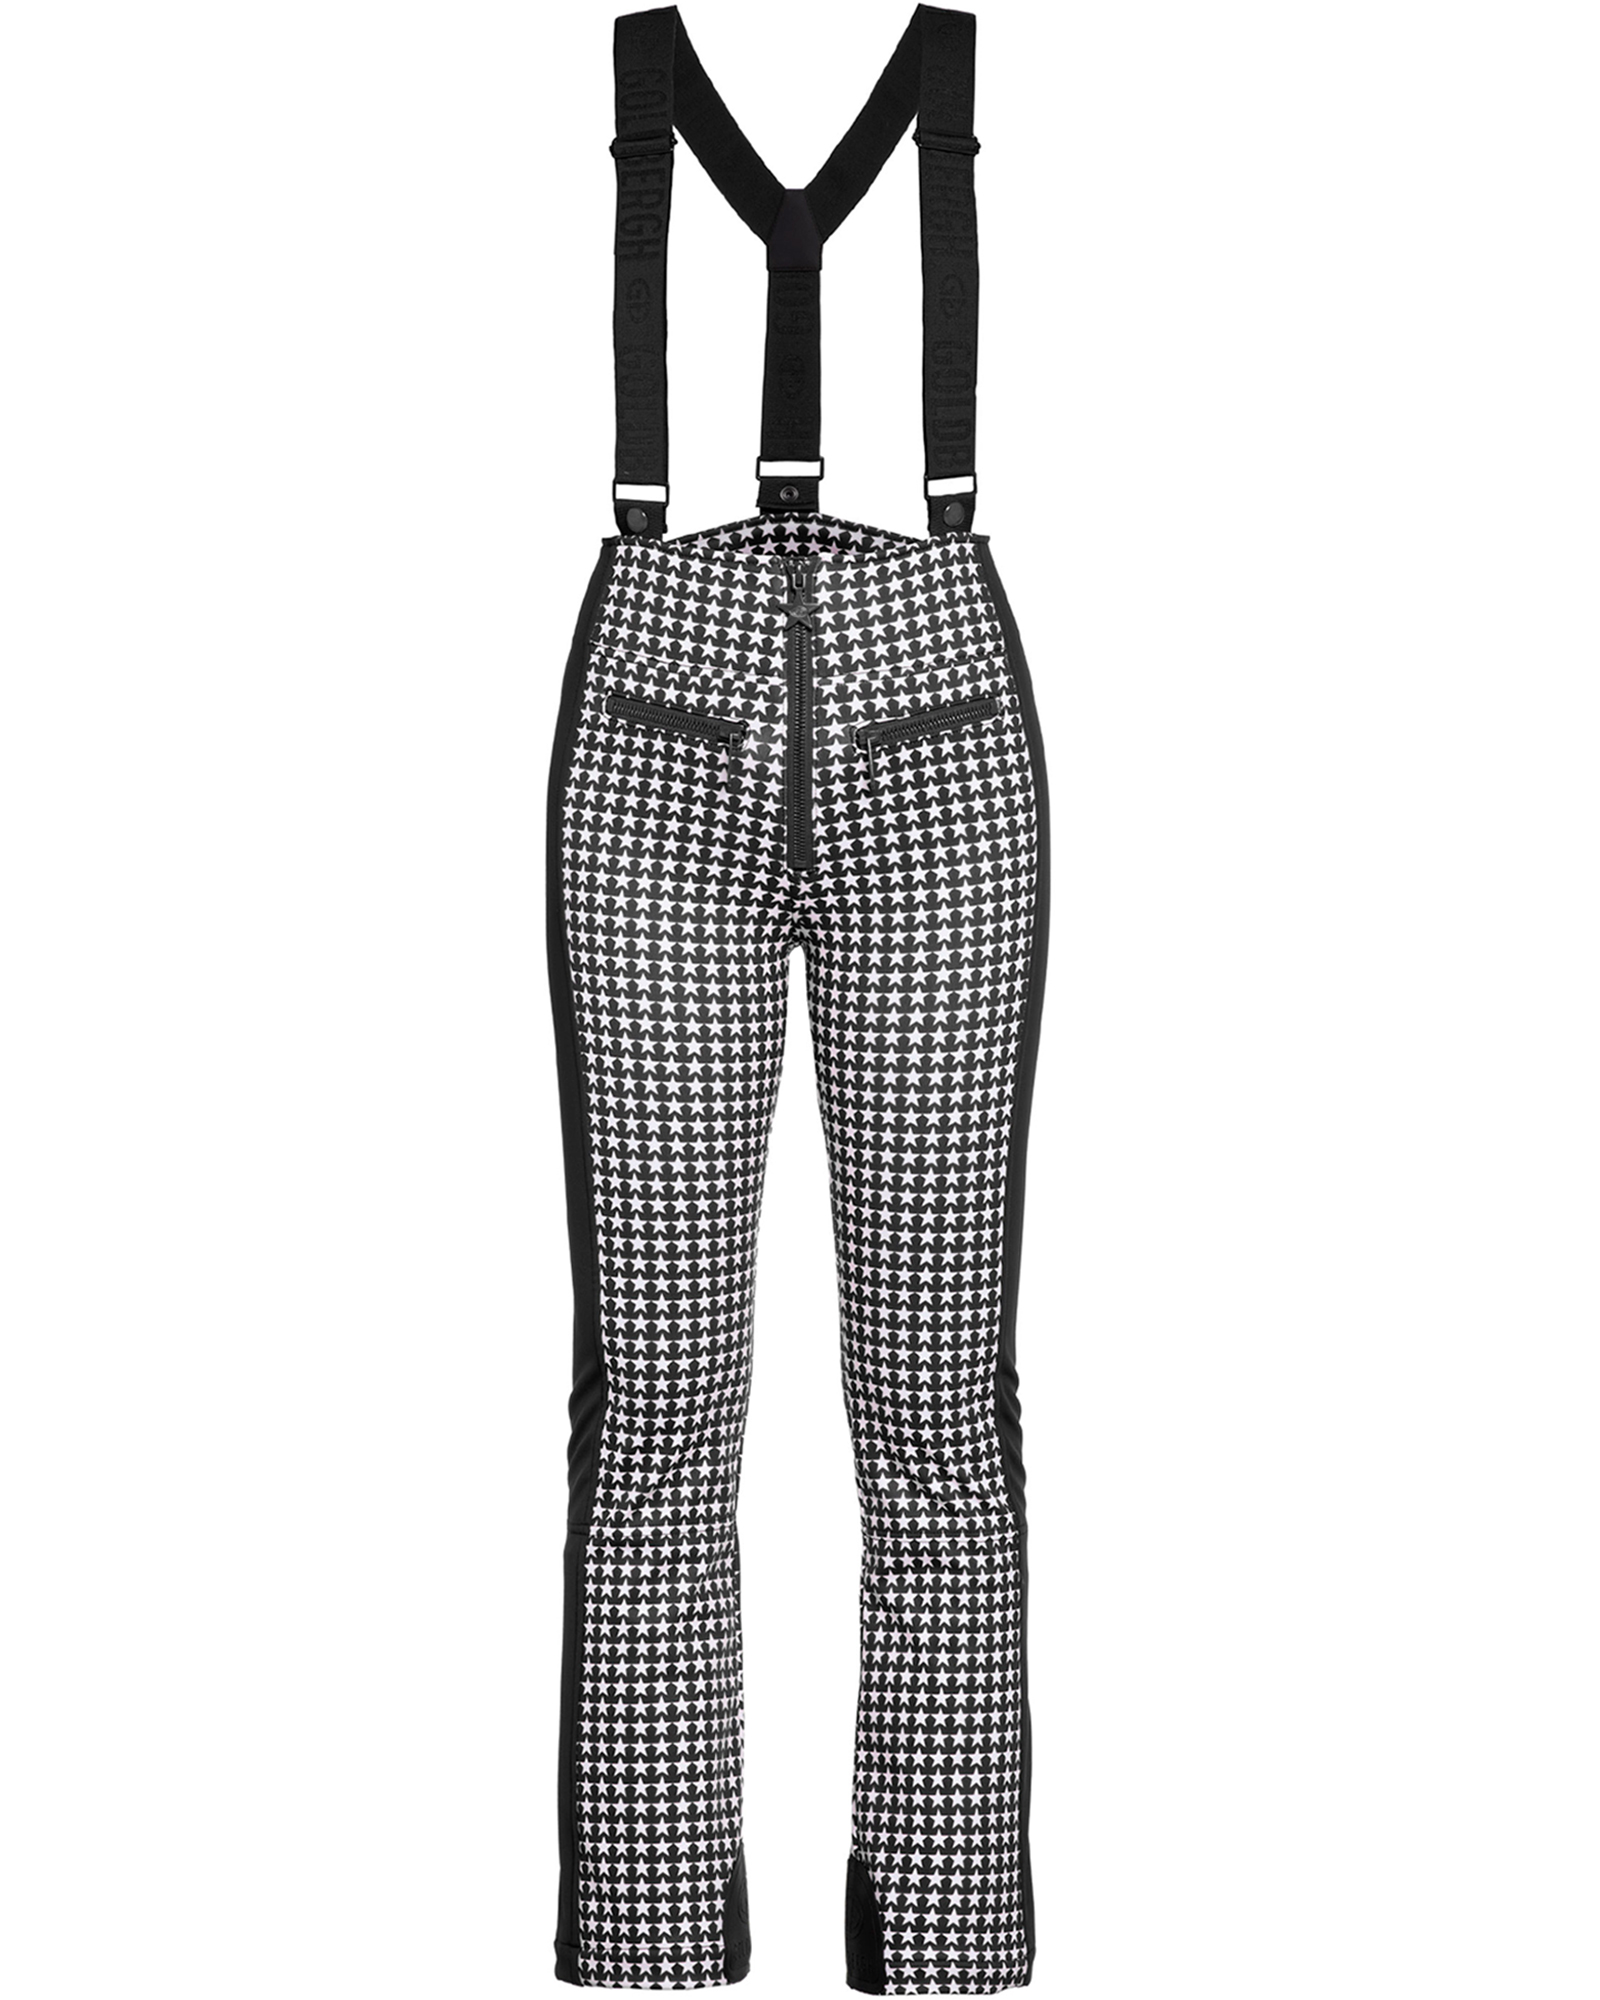 Goldbergh Women’s Starski Stretch Pants - Black/White Check 8